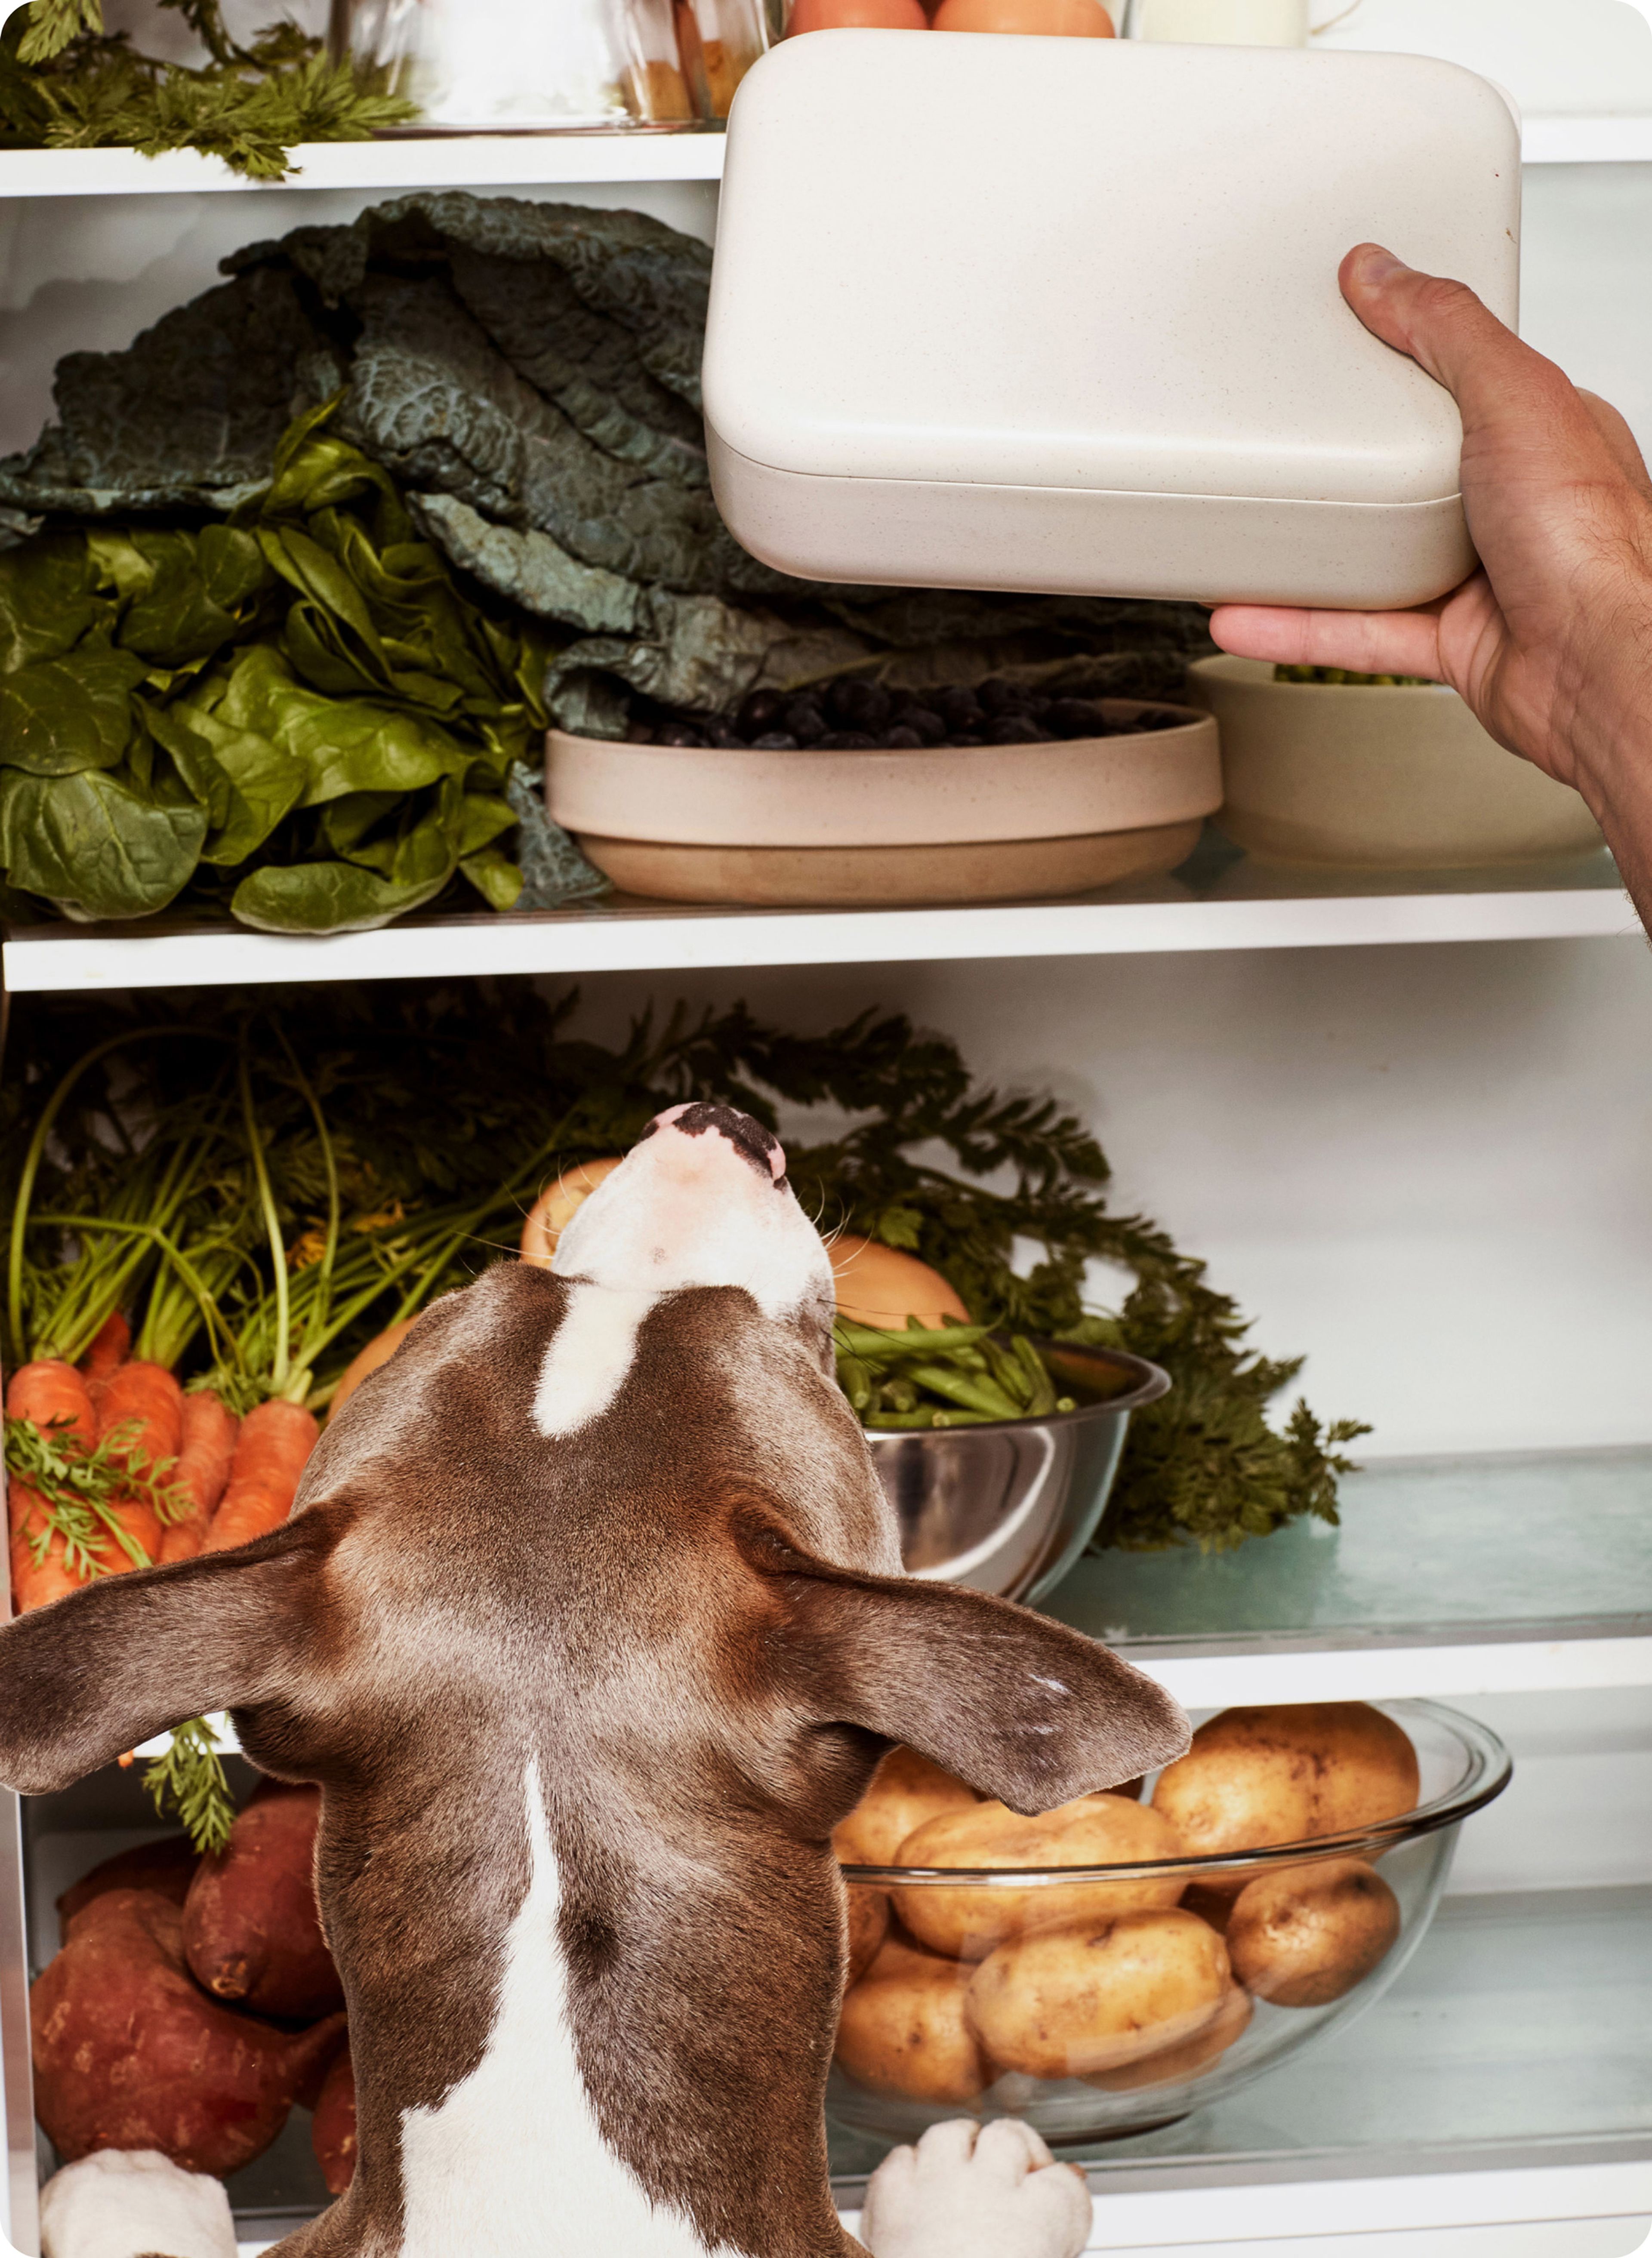 Dog poking its nose into a fridge